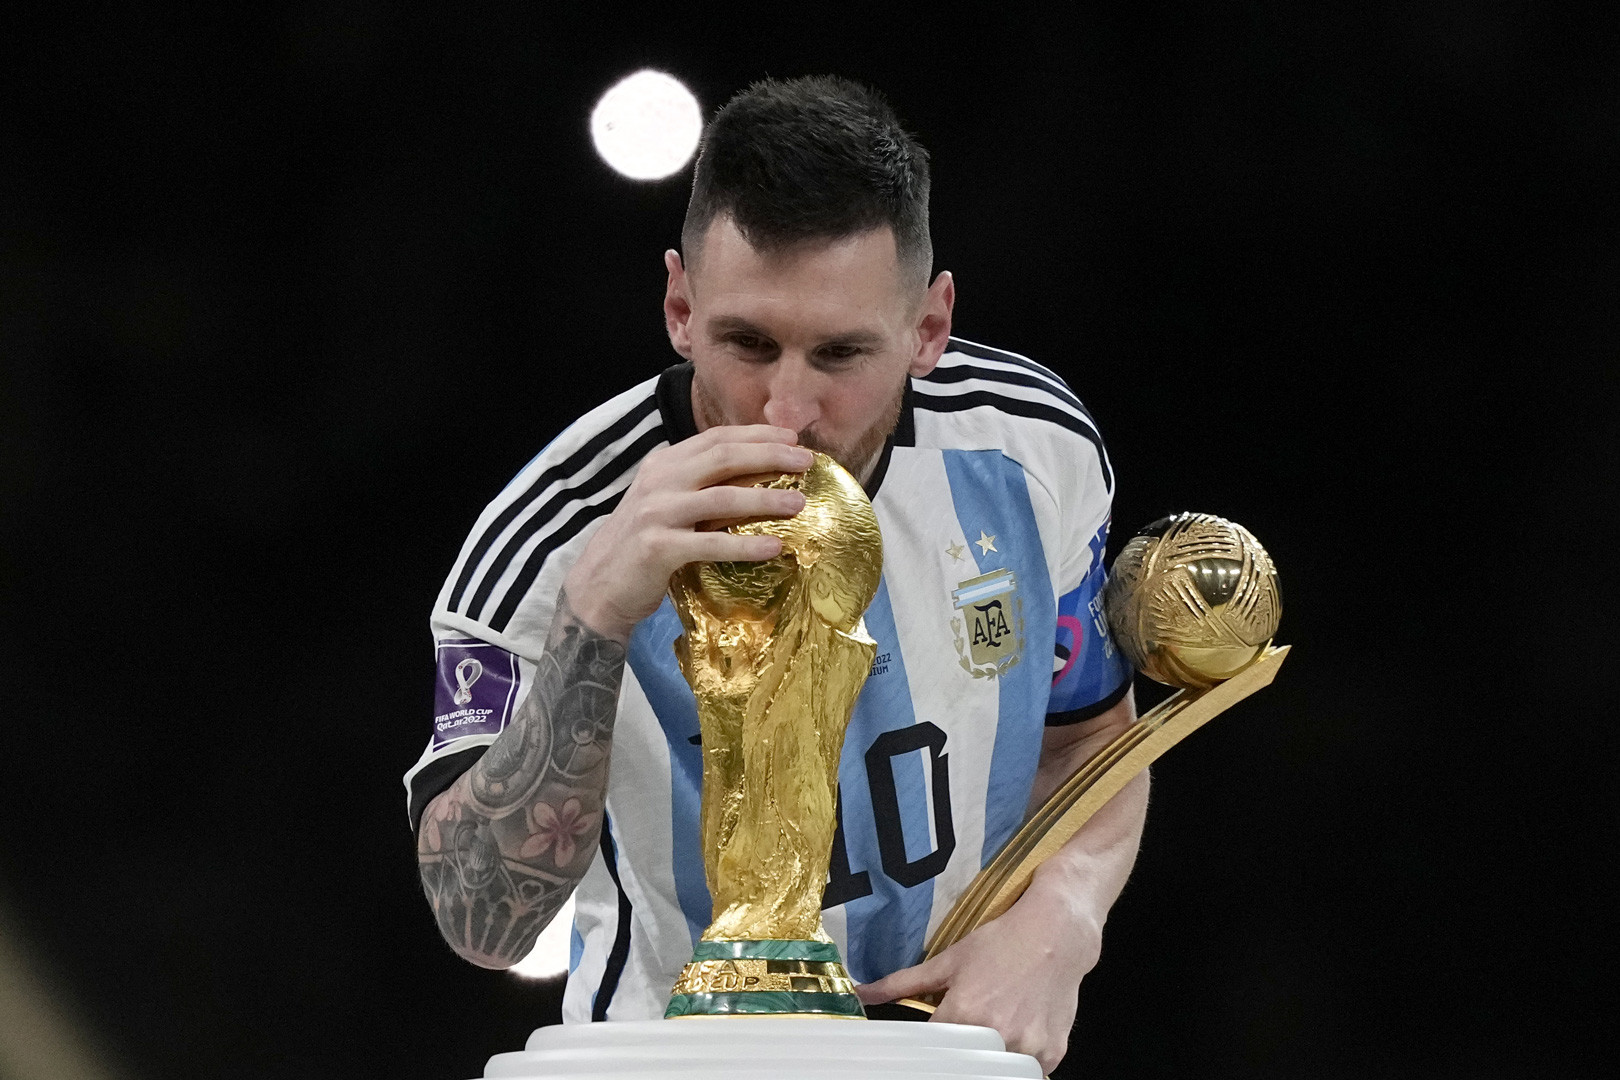 Cùng ngắm ảnh Messi cầm Cup World Cup, khoảnh khắc lịch sử của bóng đá thế giới. Với tài năng lấn át, sự kiên trì và nỗ lực không ngừng nghỉ, Messi đã làm nên lịch sử và trở thành một huyền thoại số một.